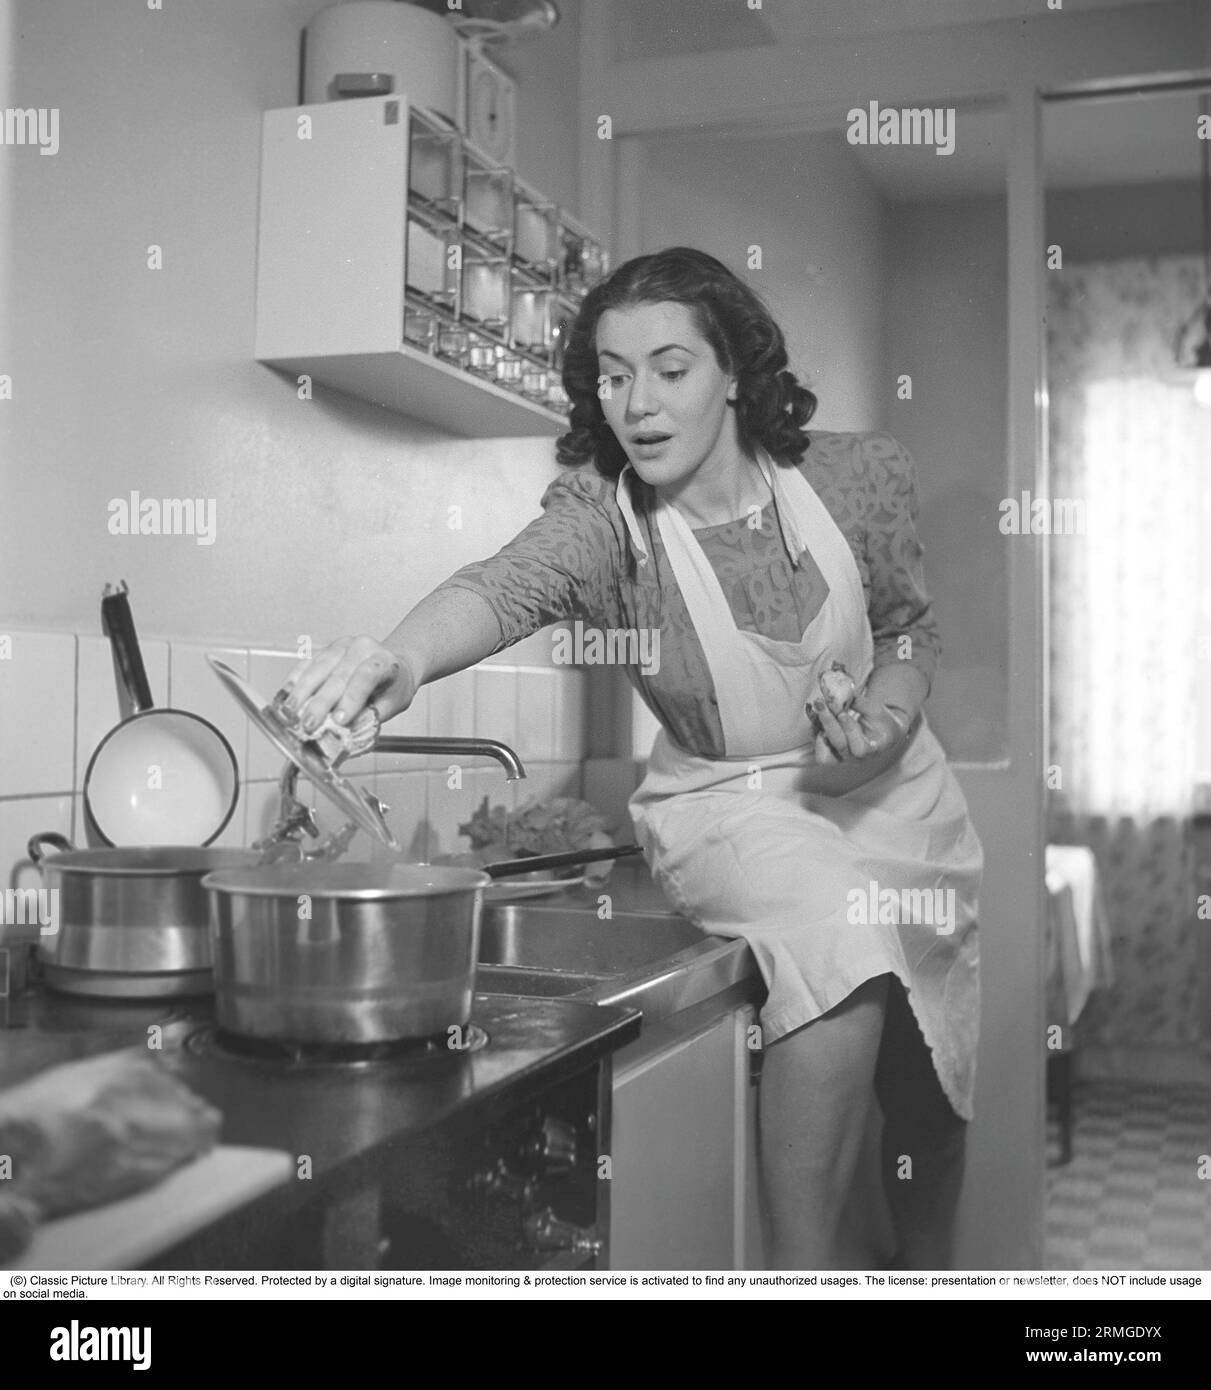 In cucina anni '1940 Interno di una cucina e una giovane donna che solleva il coperchio di una pentola sul fornello, bollendo al vapore. È l'attrice Eivor Landström, 1919-2004. Svezia 1940 Kristoffersson rif 158-34 Foto Stock